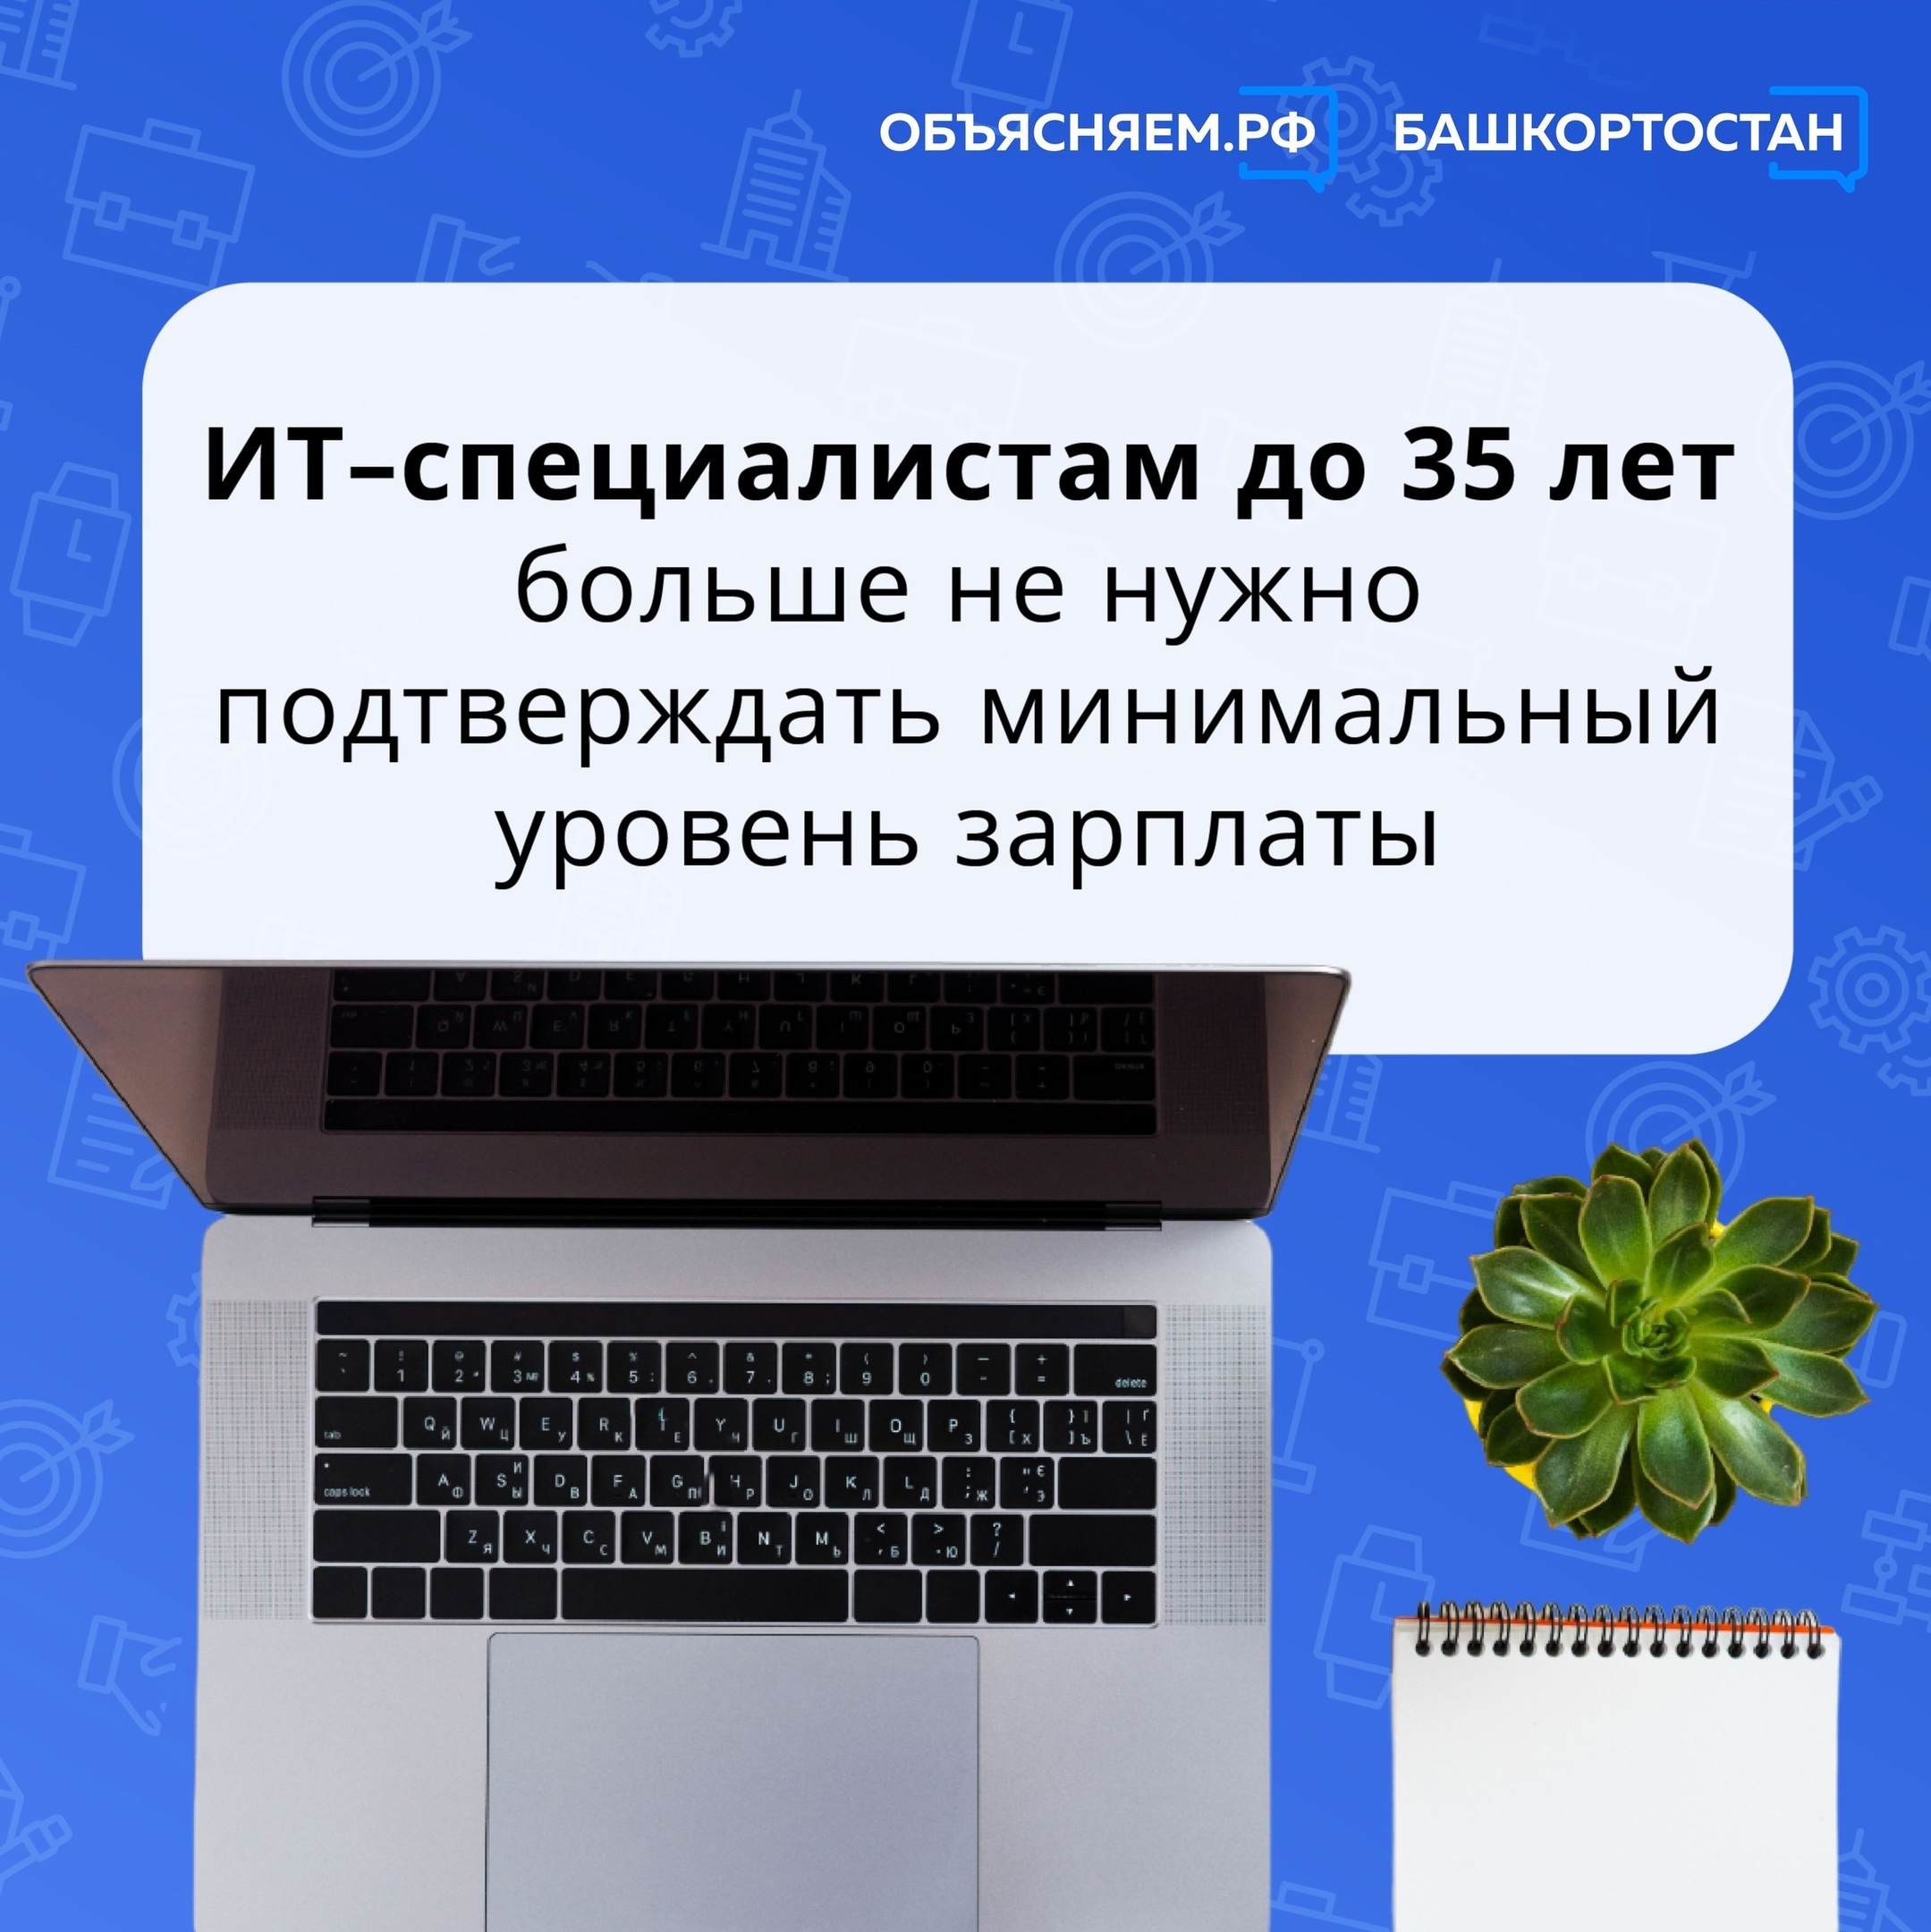 Отличные новости для работников сферы информационных технологий в Башкортостане